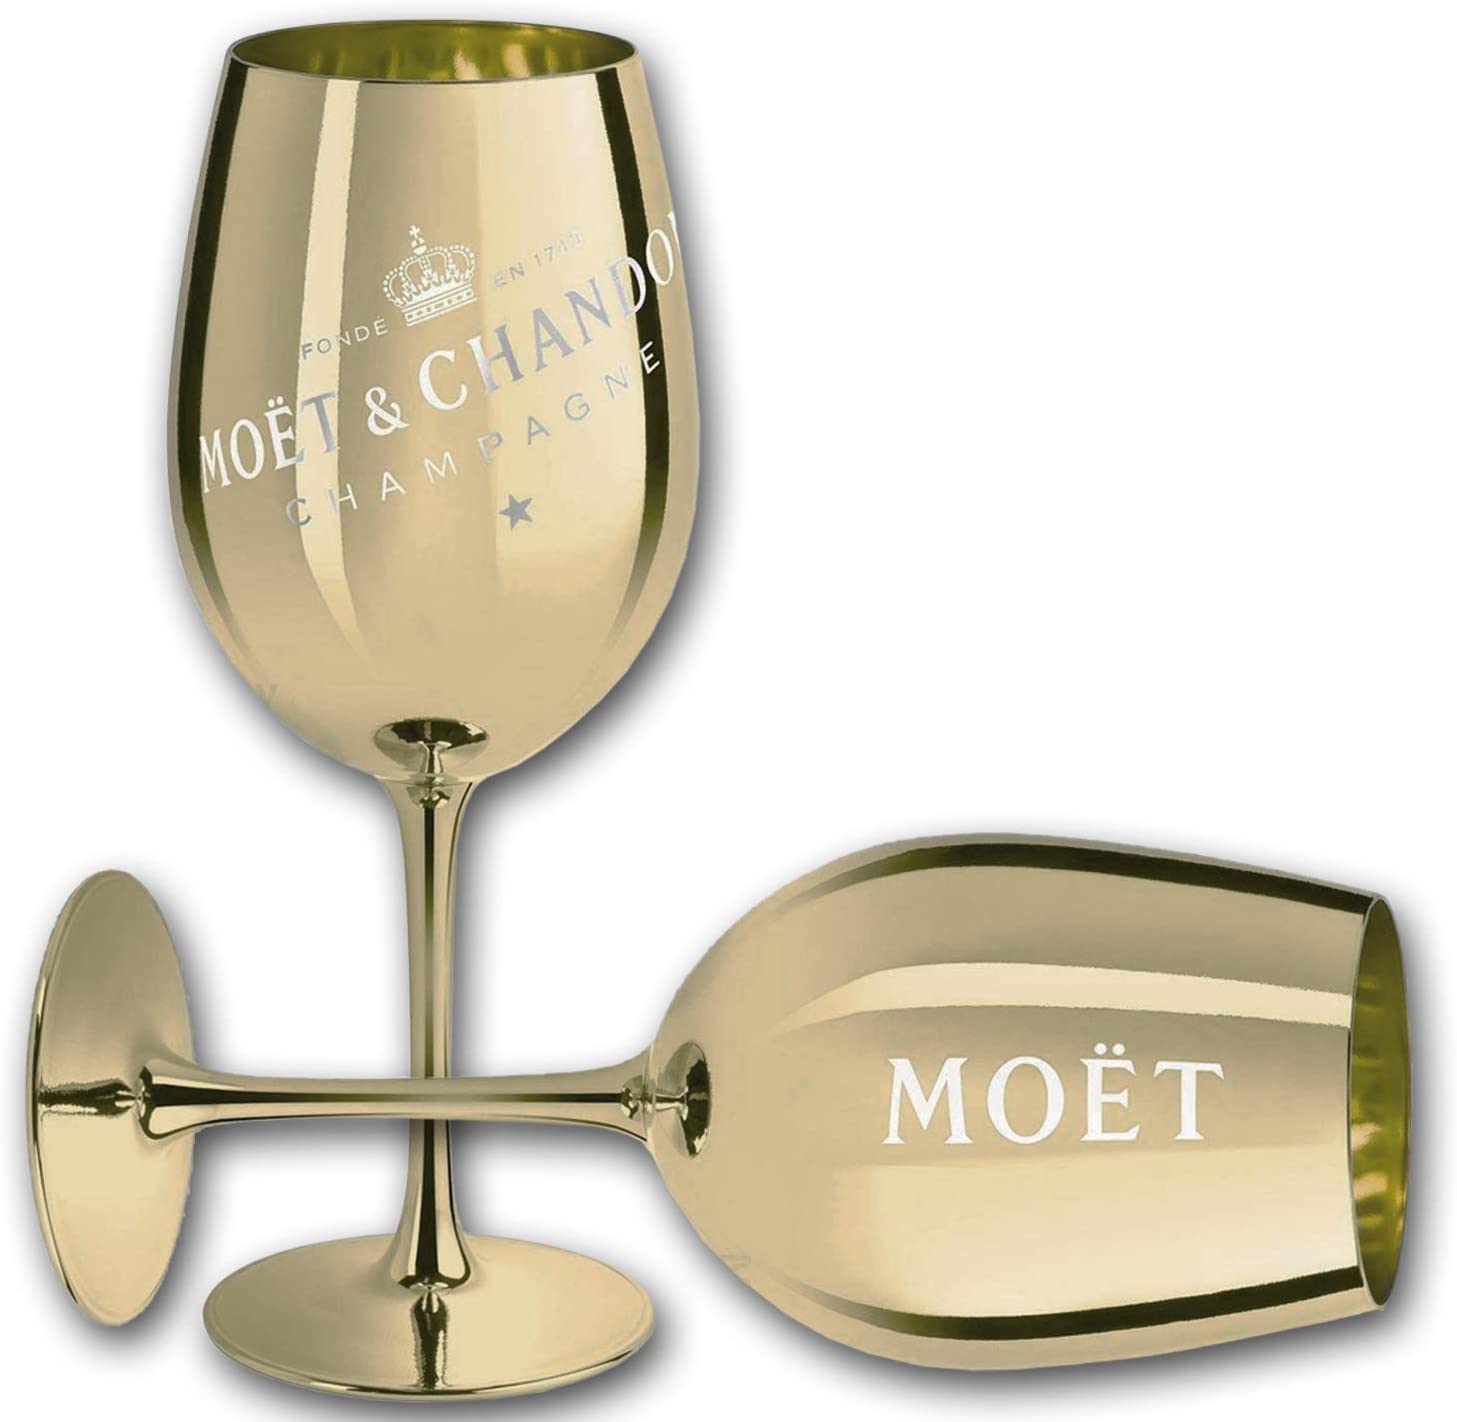 Rose Gold NEU OVP Moet & Chandon Champagner Glas Gläser Kupfer